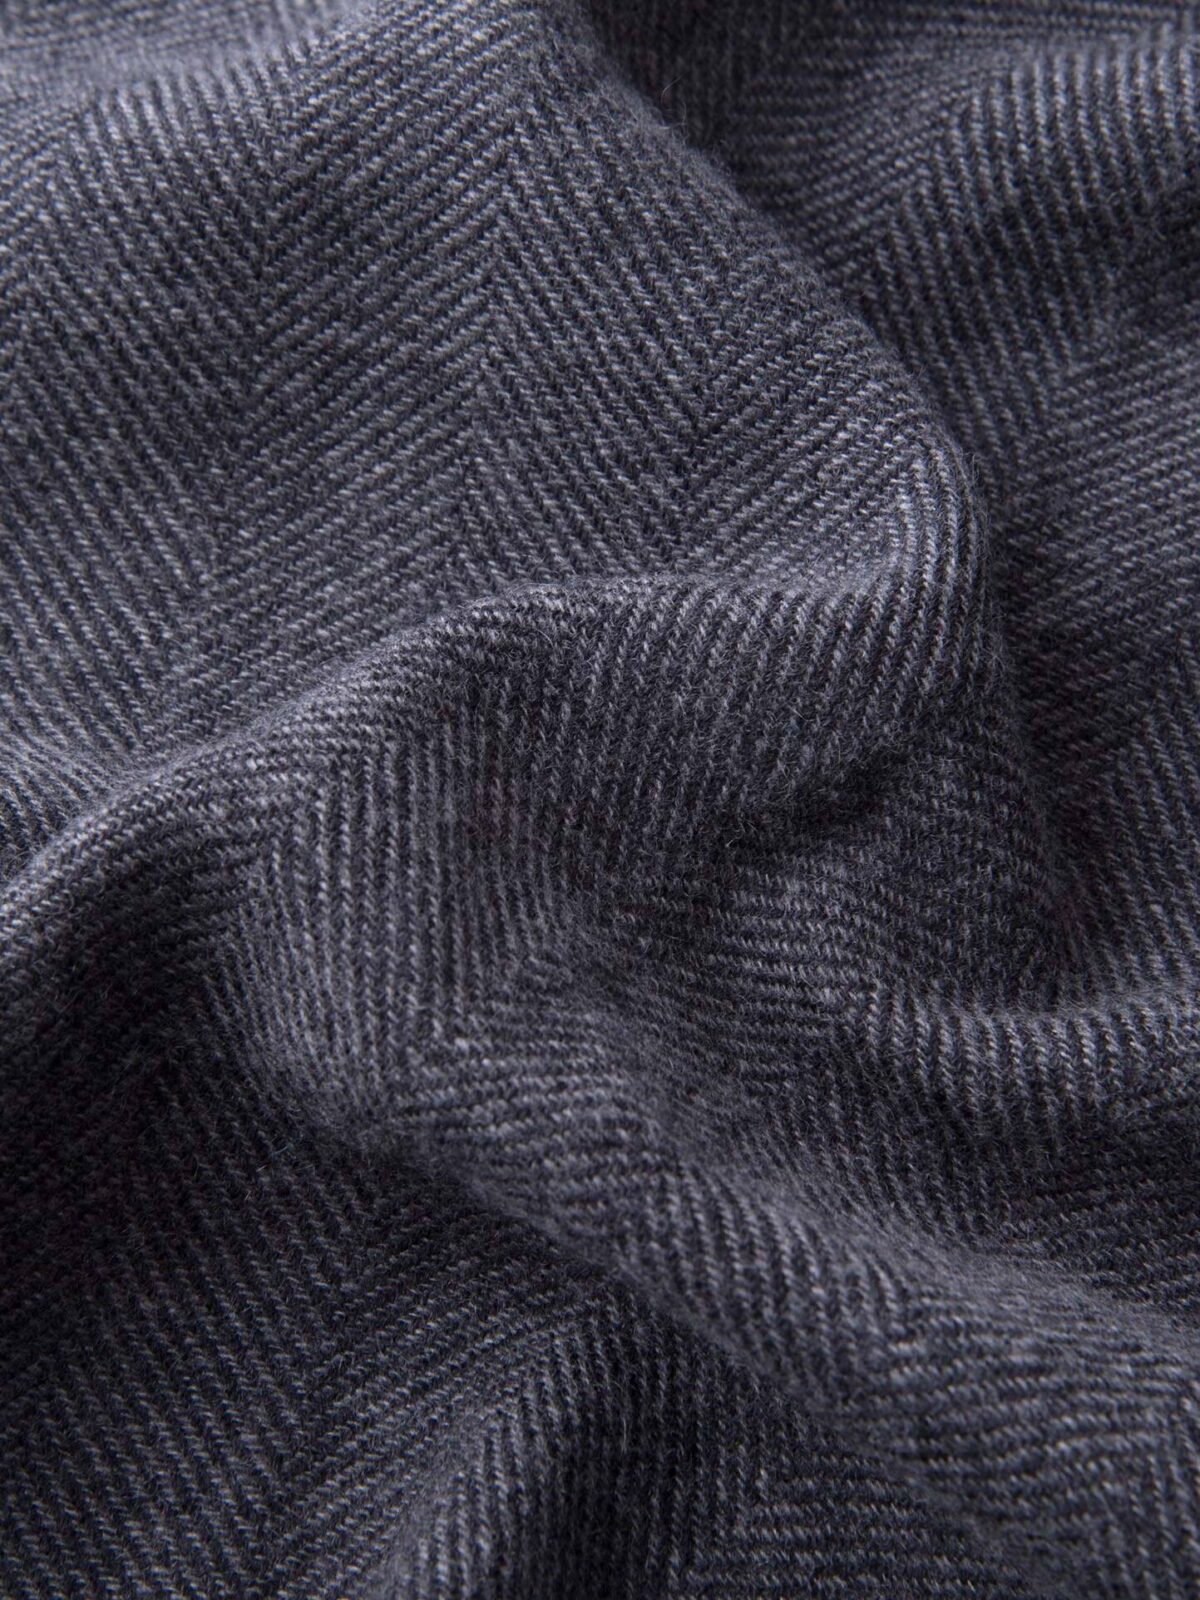 Charcoal Herringbone Wool Cashmere Scarf